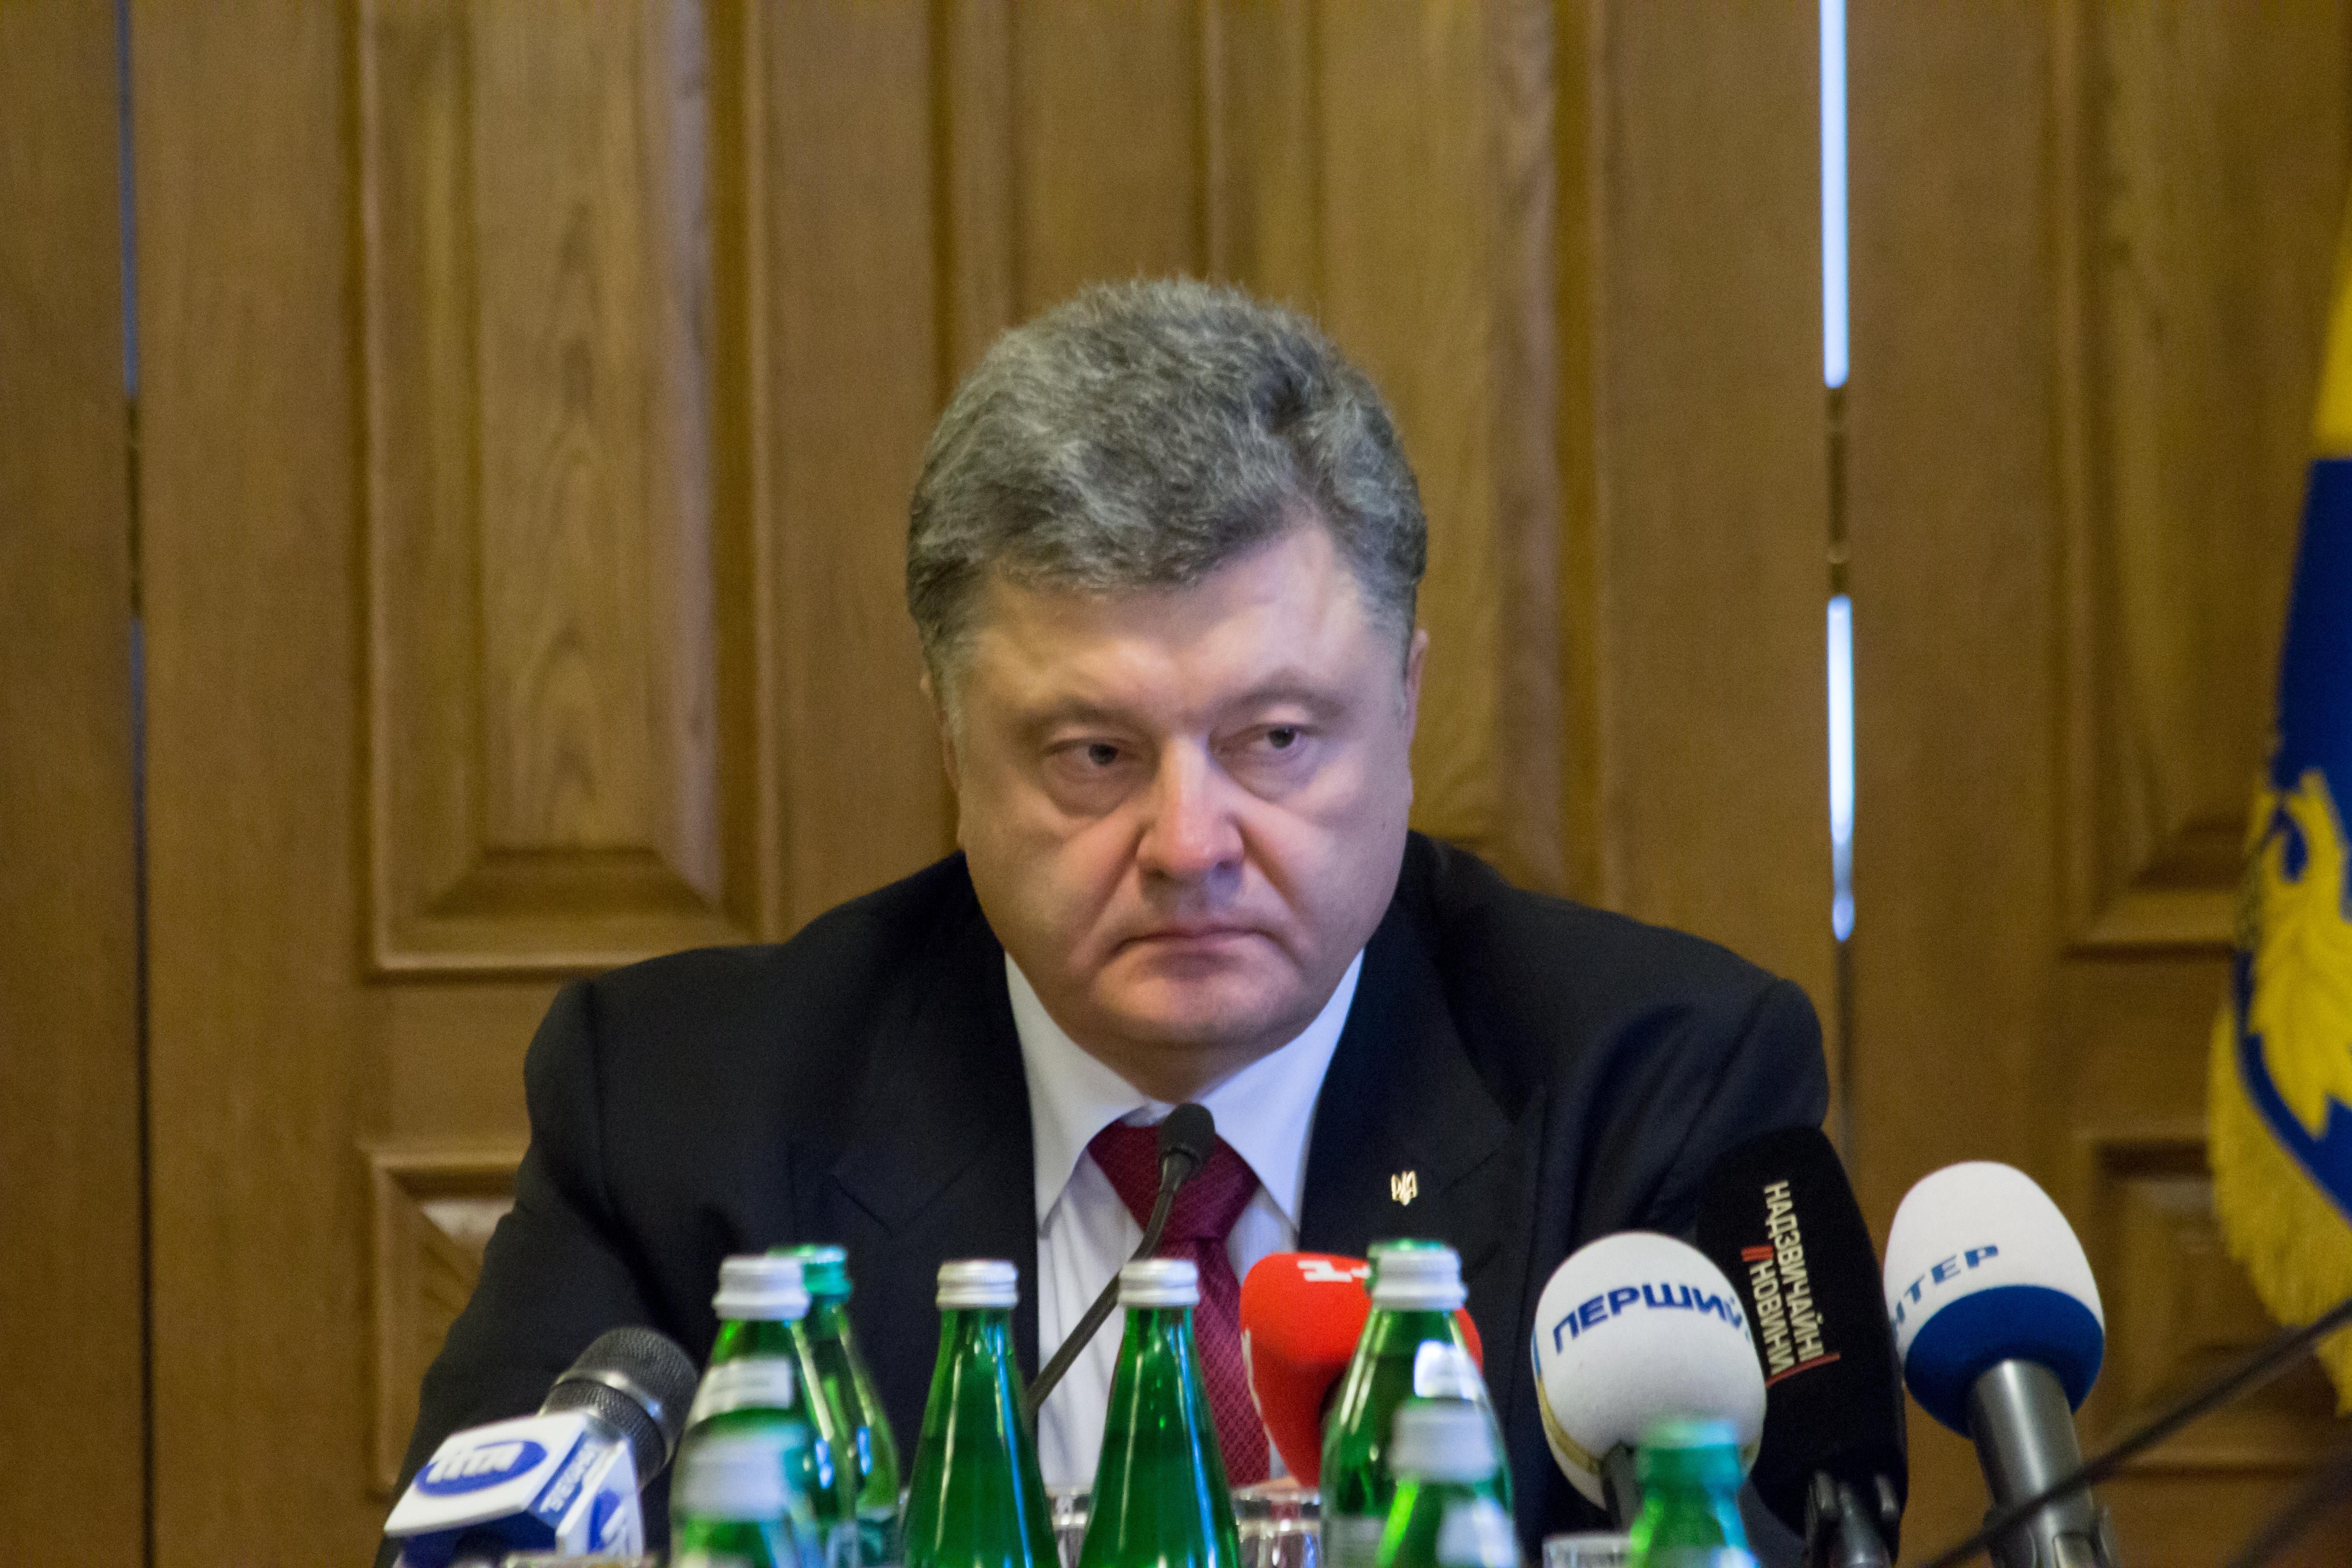 Это откровенное издевательство: эксперты говорят, что Порошенко вызвал раздражение в ЕС